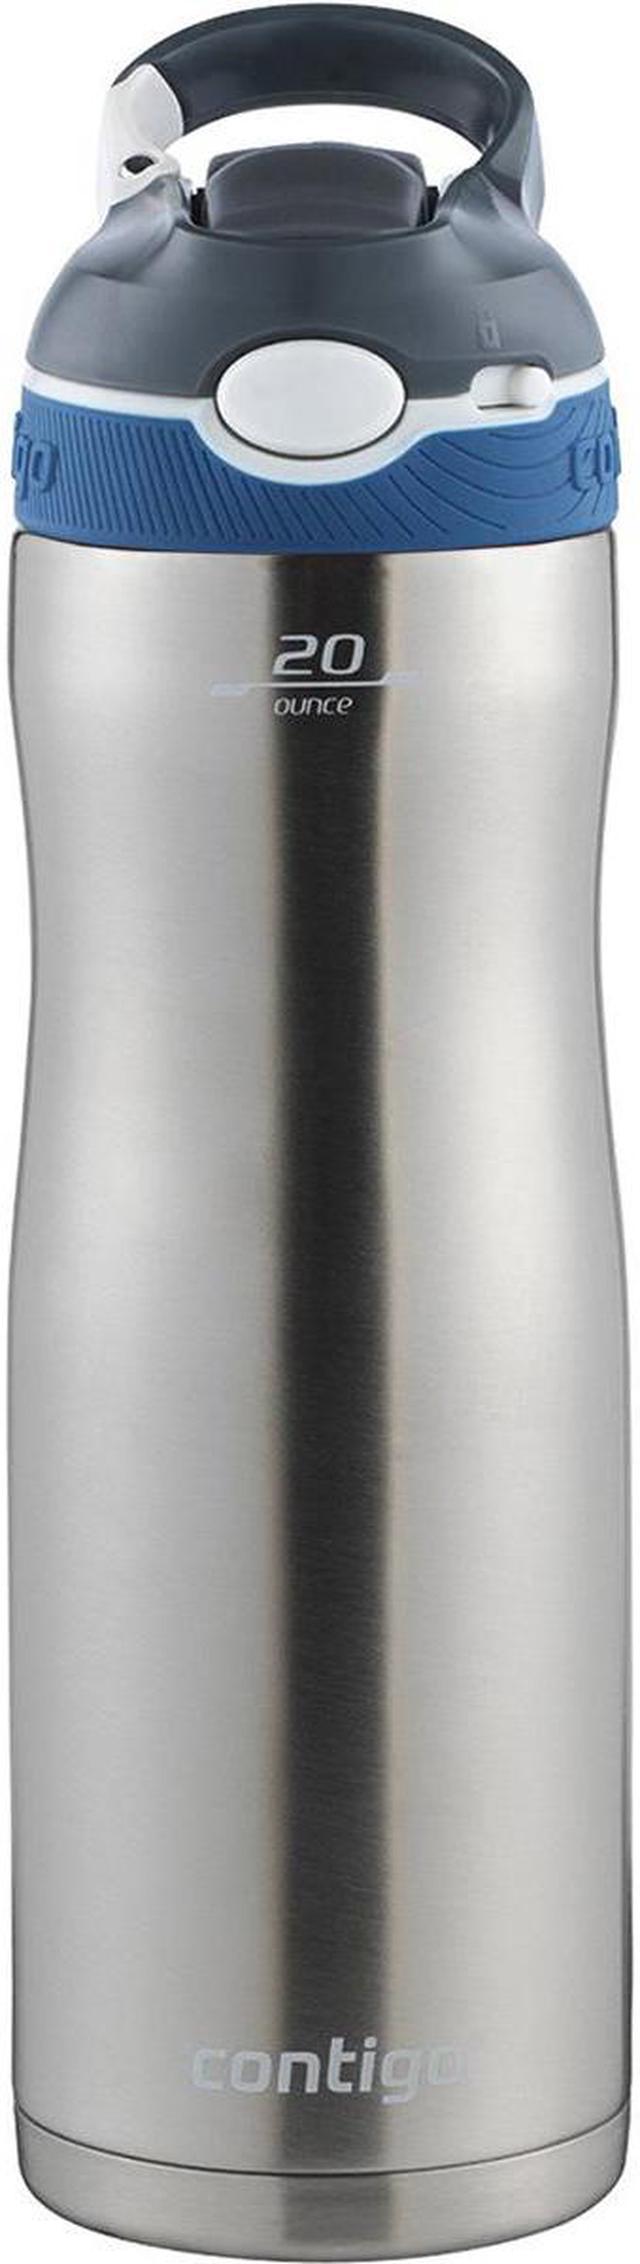 Contigo 20 oz. Ashland Chill Autospout Stainless Steel Water Bottle -  Monaco 